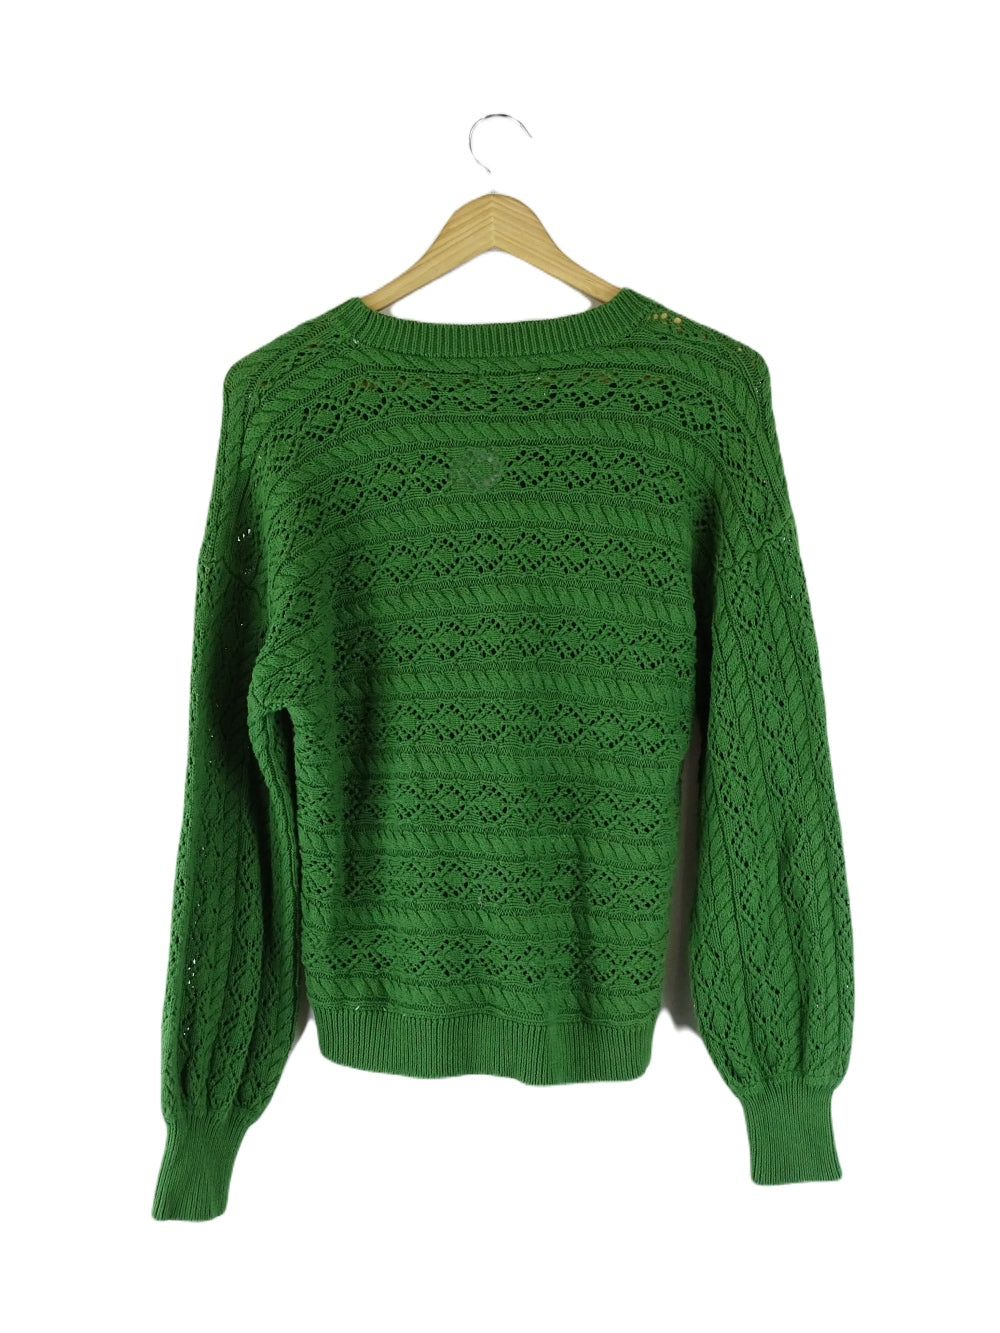 Iris Mazi Green Knit Jumper L